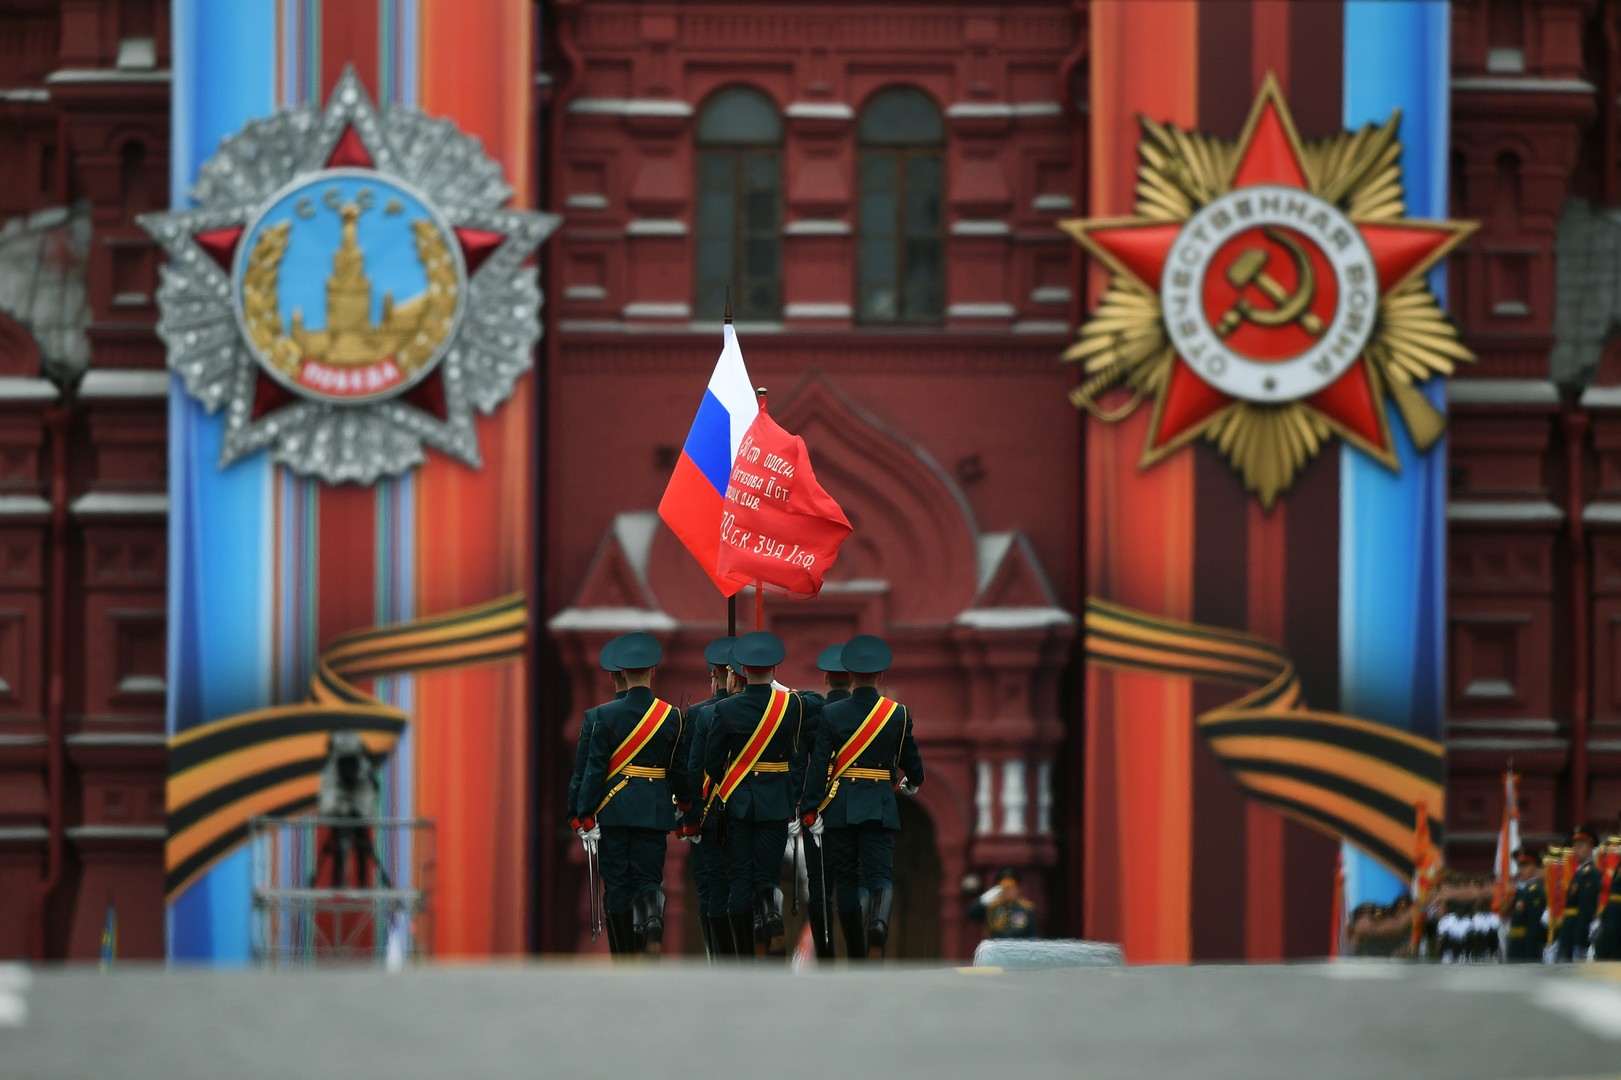 Moscou célèbre le 72e anniversaire de la victoire sur le nazisme par une parade militaire (IMAGES)